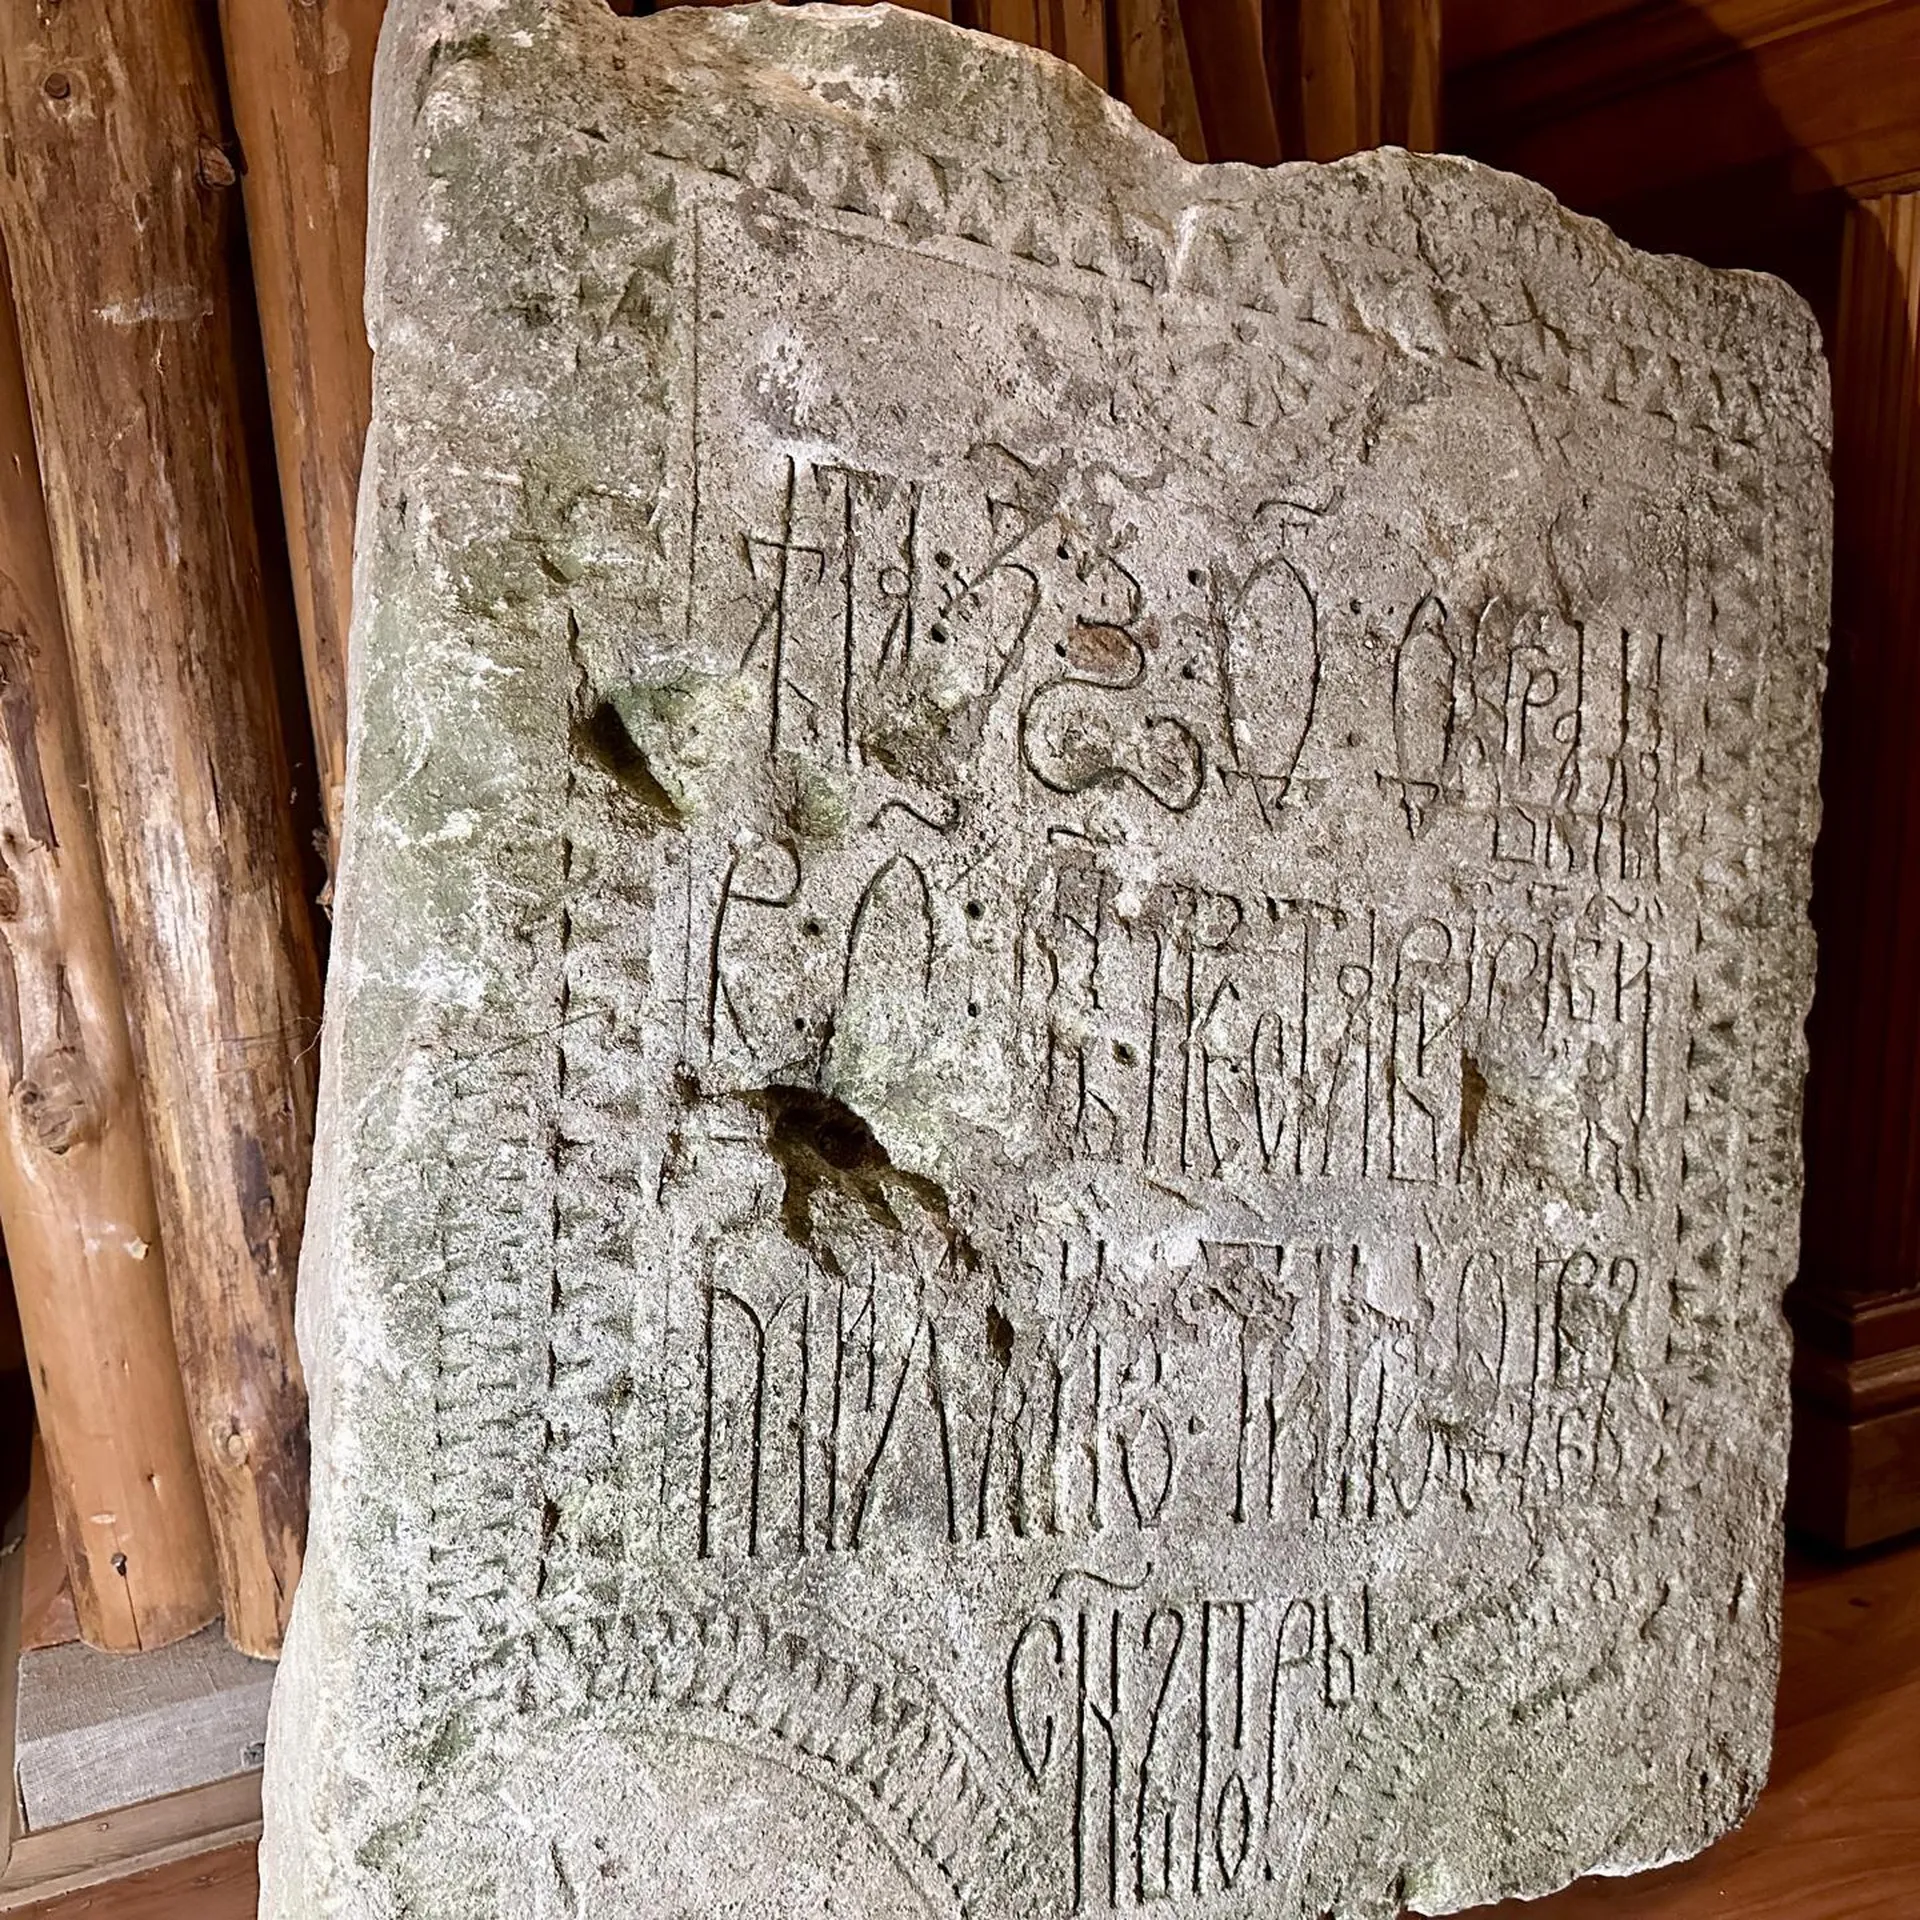 В краеведческом музее Клина показали уникальную находку — надгробную плиту 16-го века